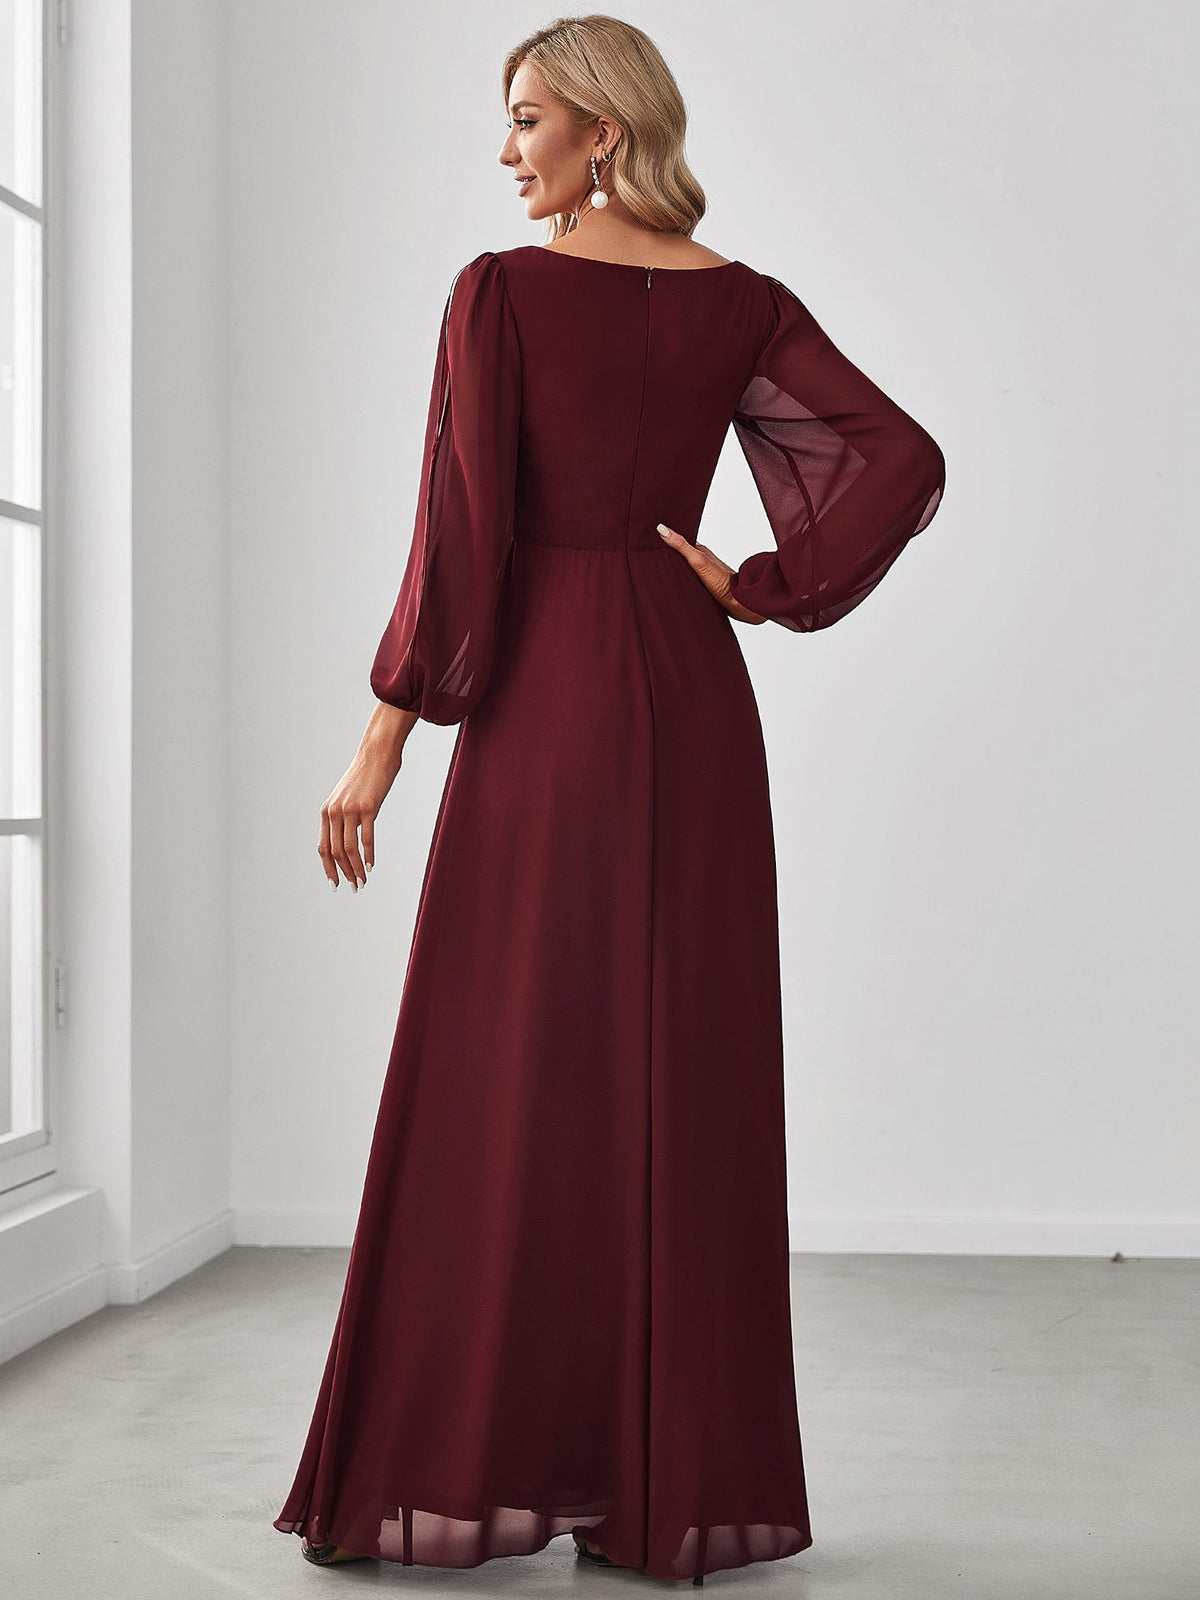 Robe Mère De La Mariée moderne Longue Elegante Avec Lanterne en V Profond #Couleur_Bordeaux